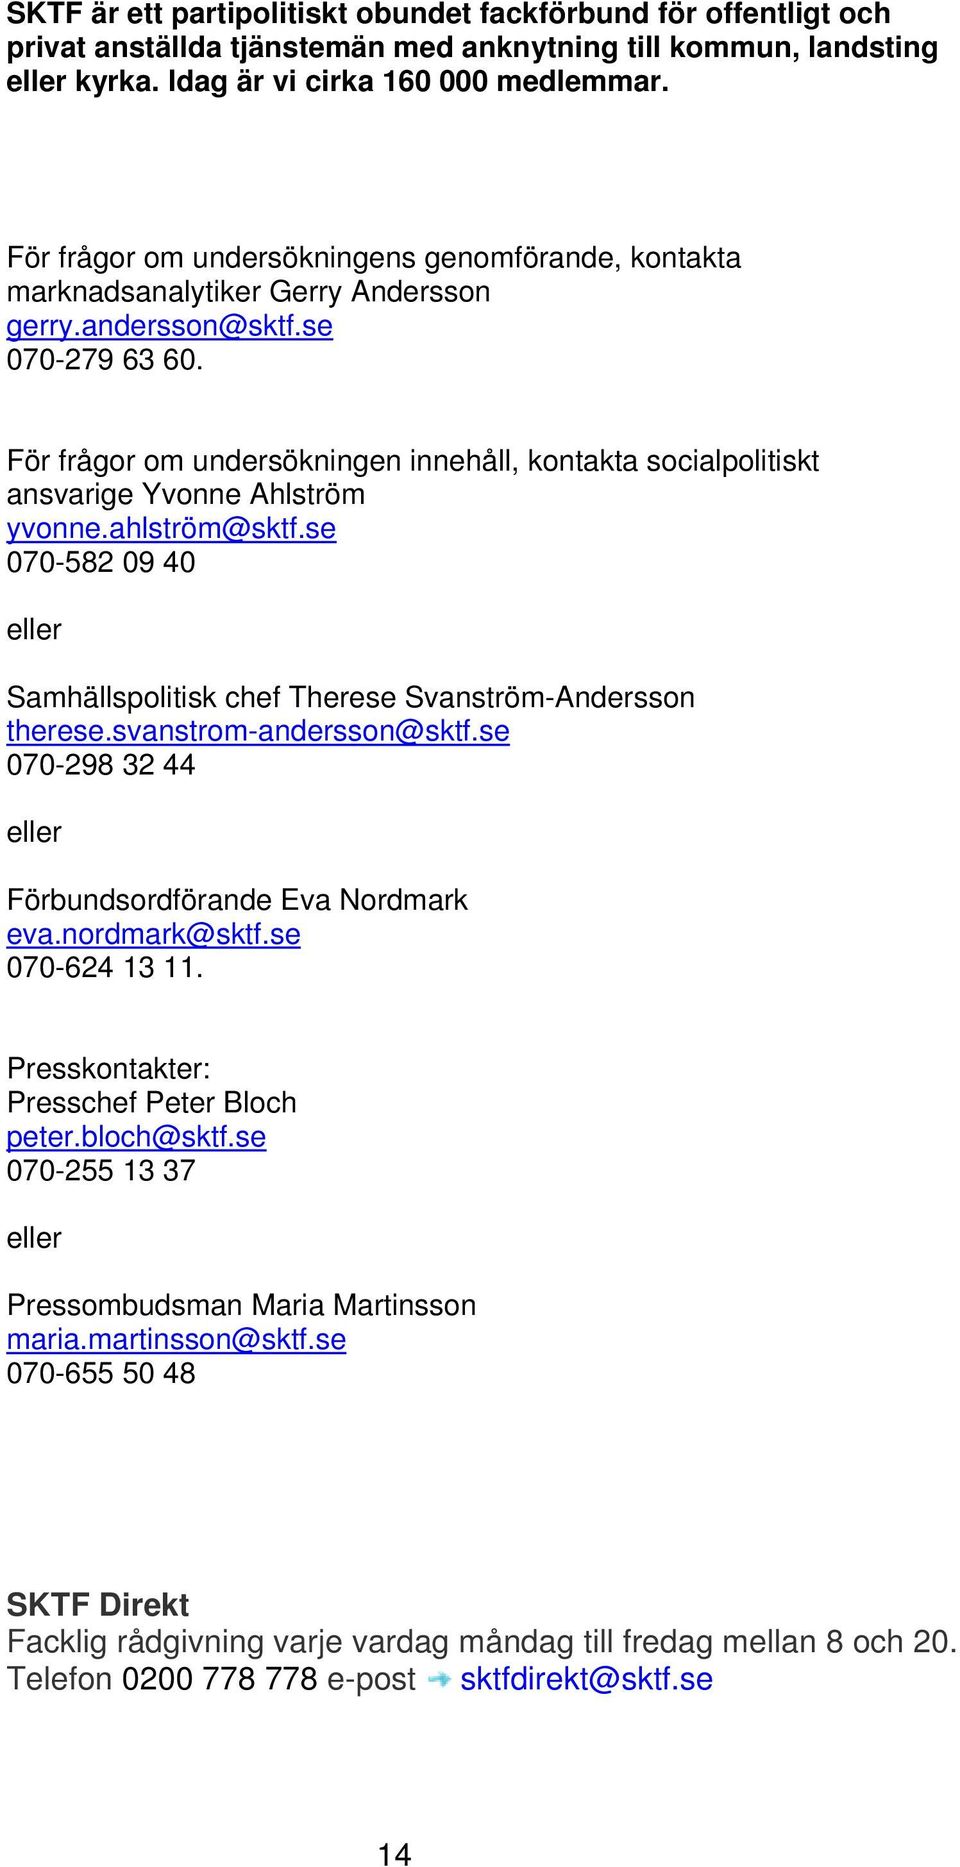 För frågor om undersökningen innehåll, kontakta socialpolitiskt ansvarige Yvonne Ahlström yvonne.ahlström@sktf.se 070-582 09 40 eller Samhällspolitisk chef Therese Svanström-Andersson therese.